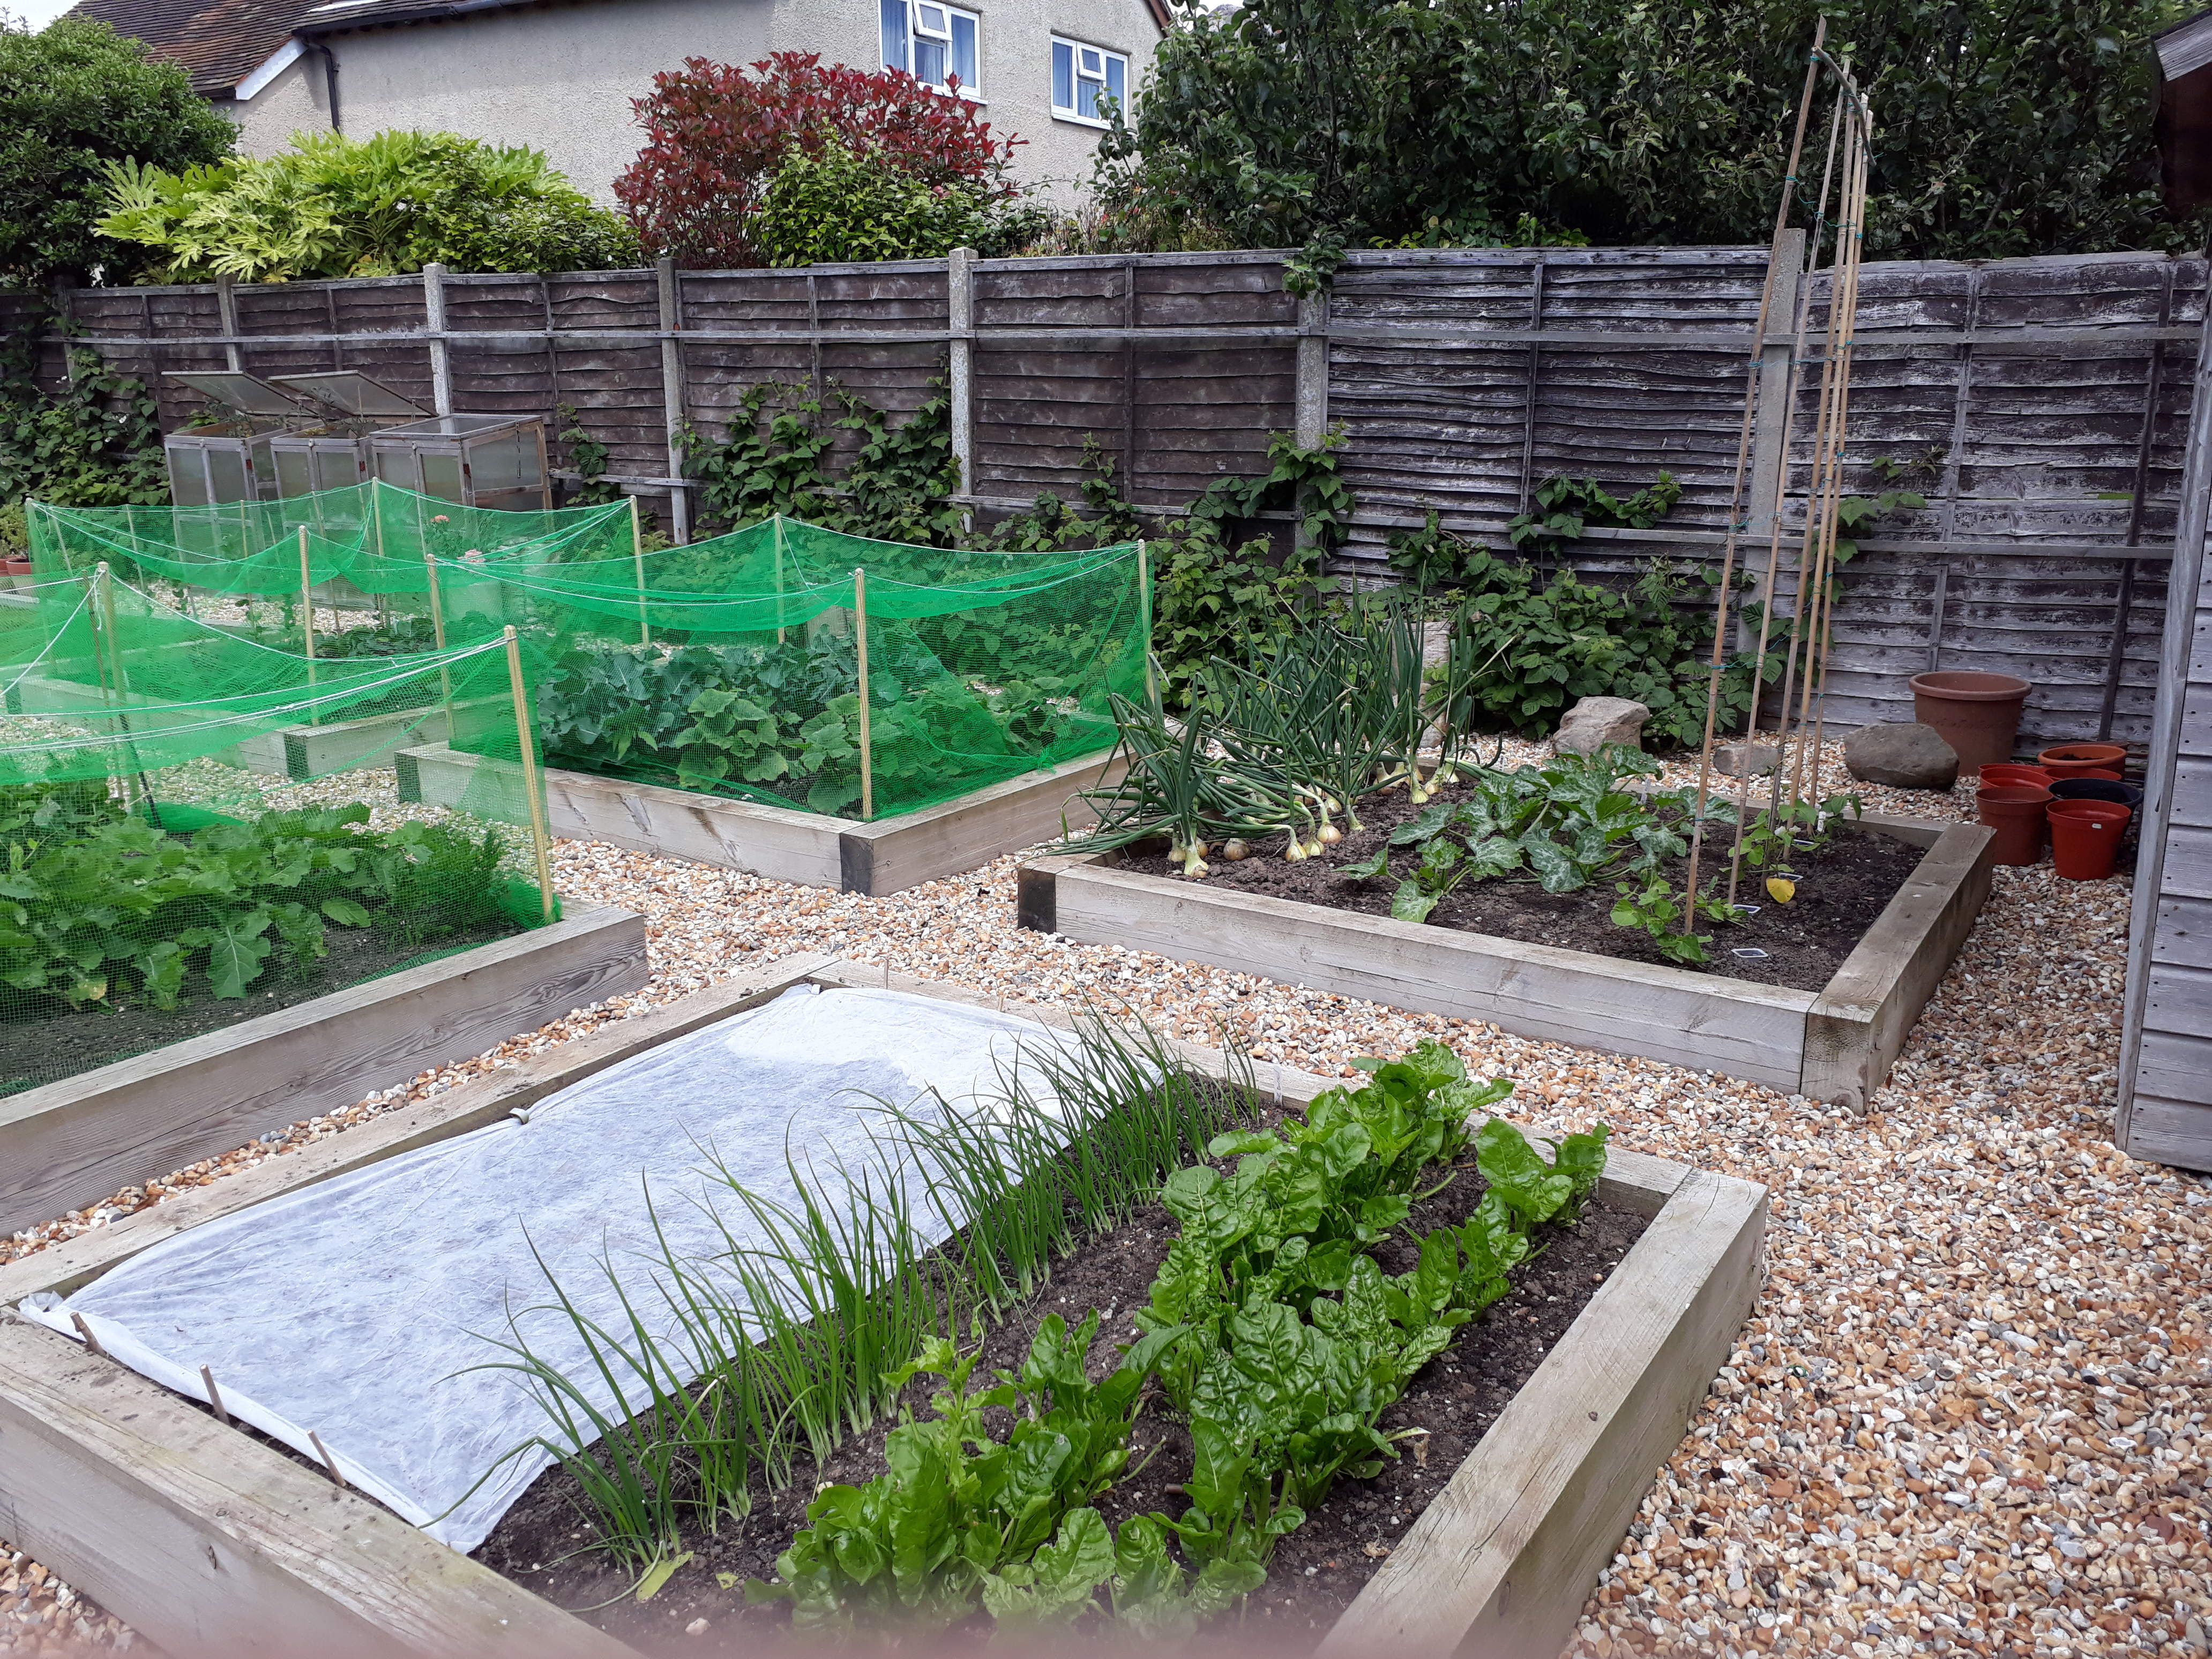 Raised Vegetable Beds in June